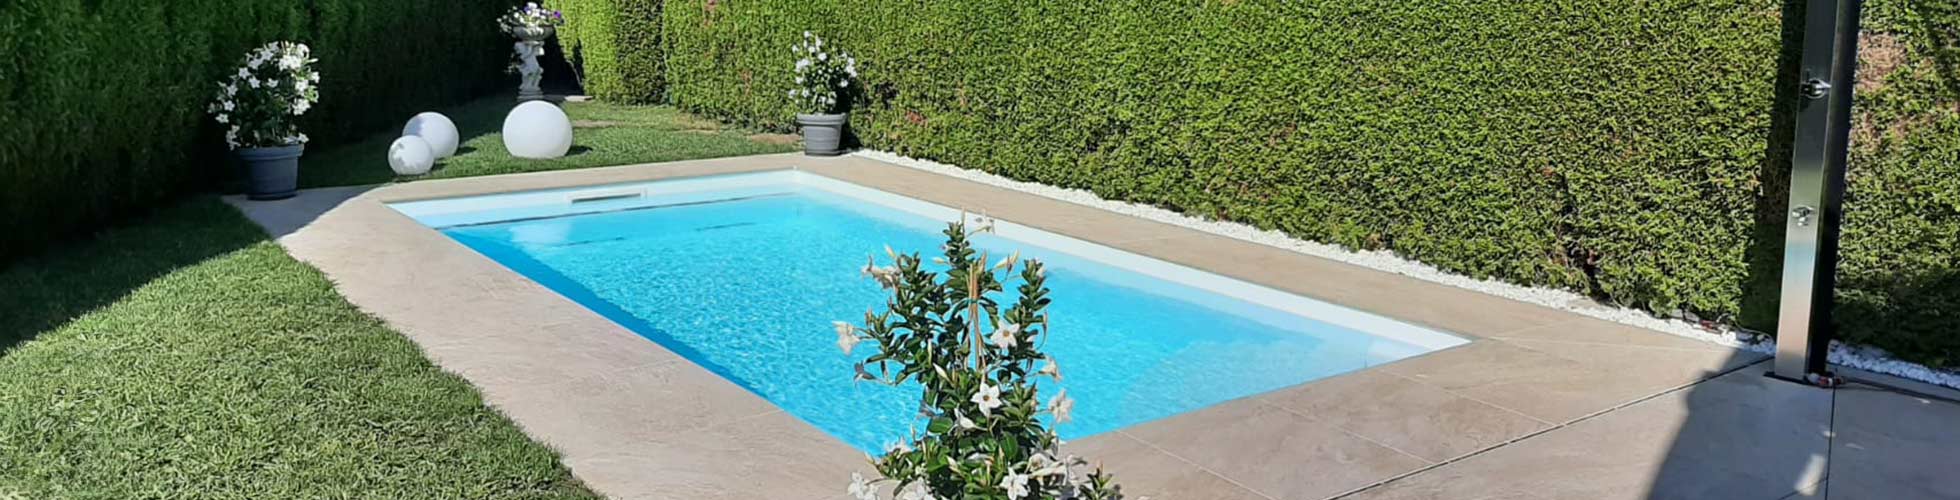 Pool in einem Garten mit Terassenplatten - gebaut von Poolbau Eckschlager in Salzburg